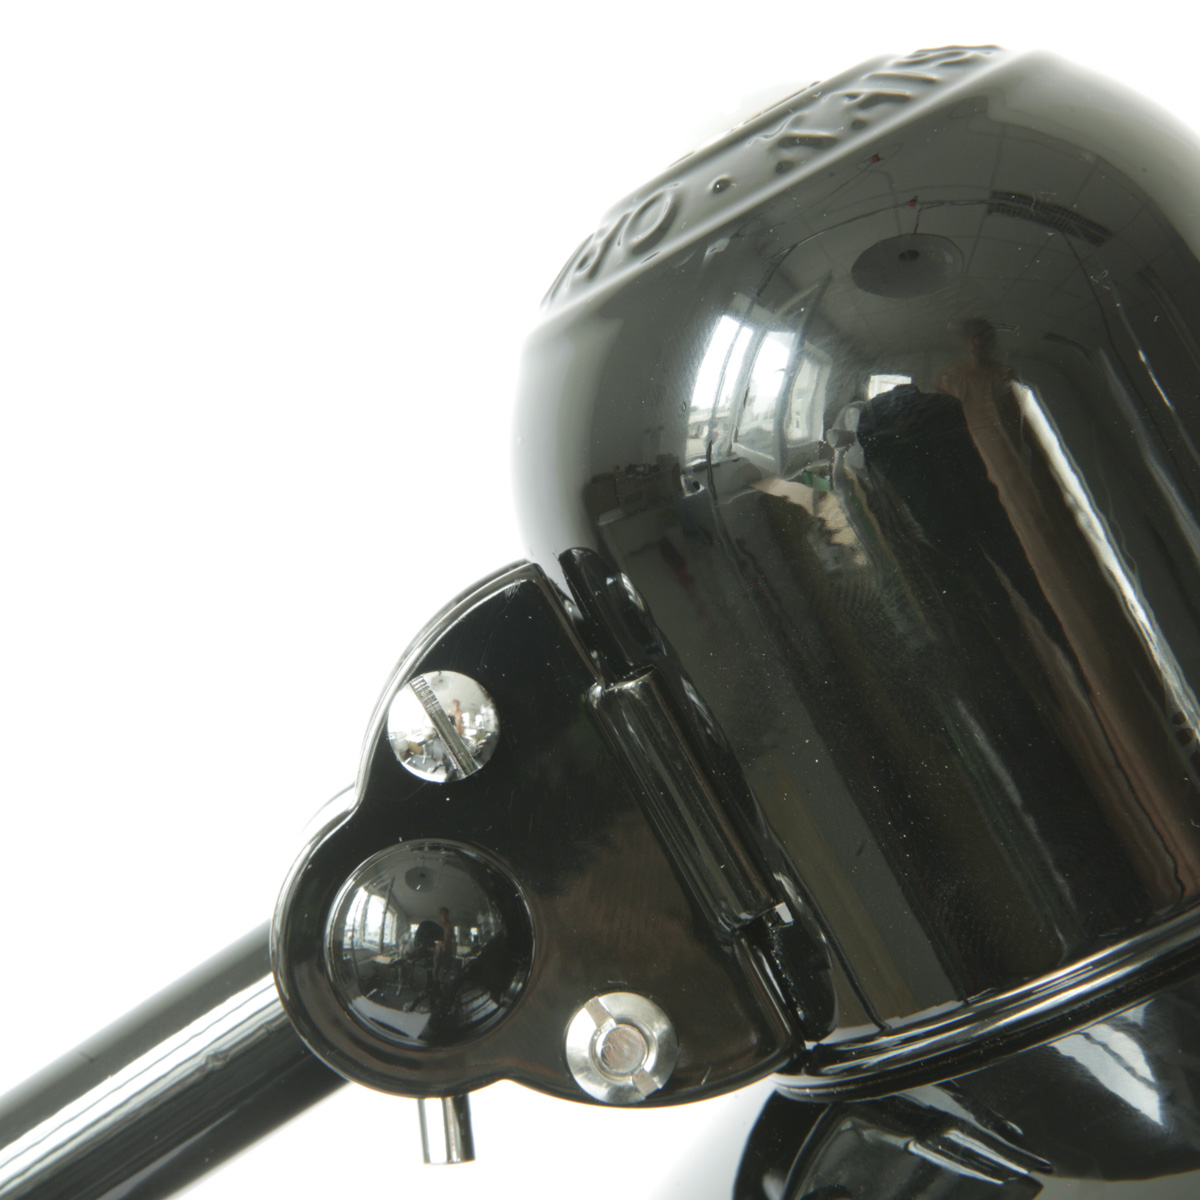 Kaiser idell-Tischleuchte 6556-T („Kommissarleuchte“) in schwarz: Typische Bauhauslösung, schlicht und effektiv: Zwei schwarze Backen fixieren das verchromte Kugelgelenk.